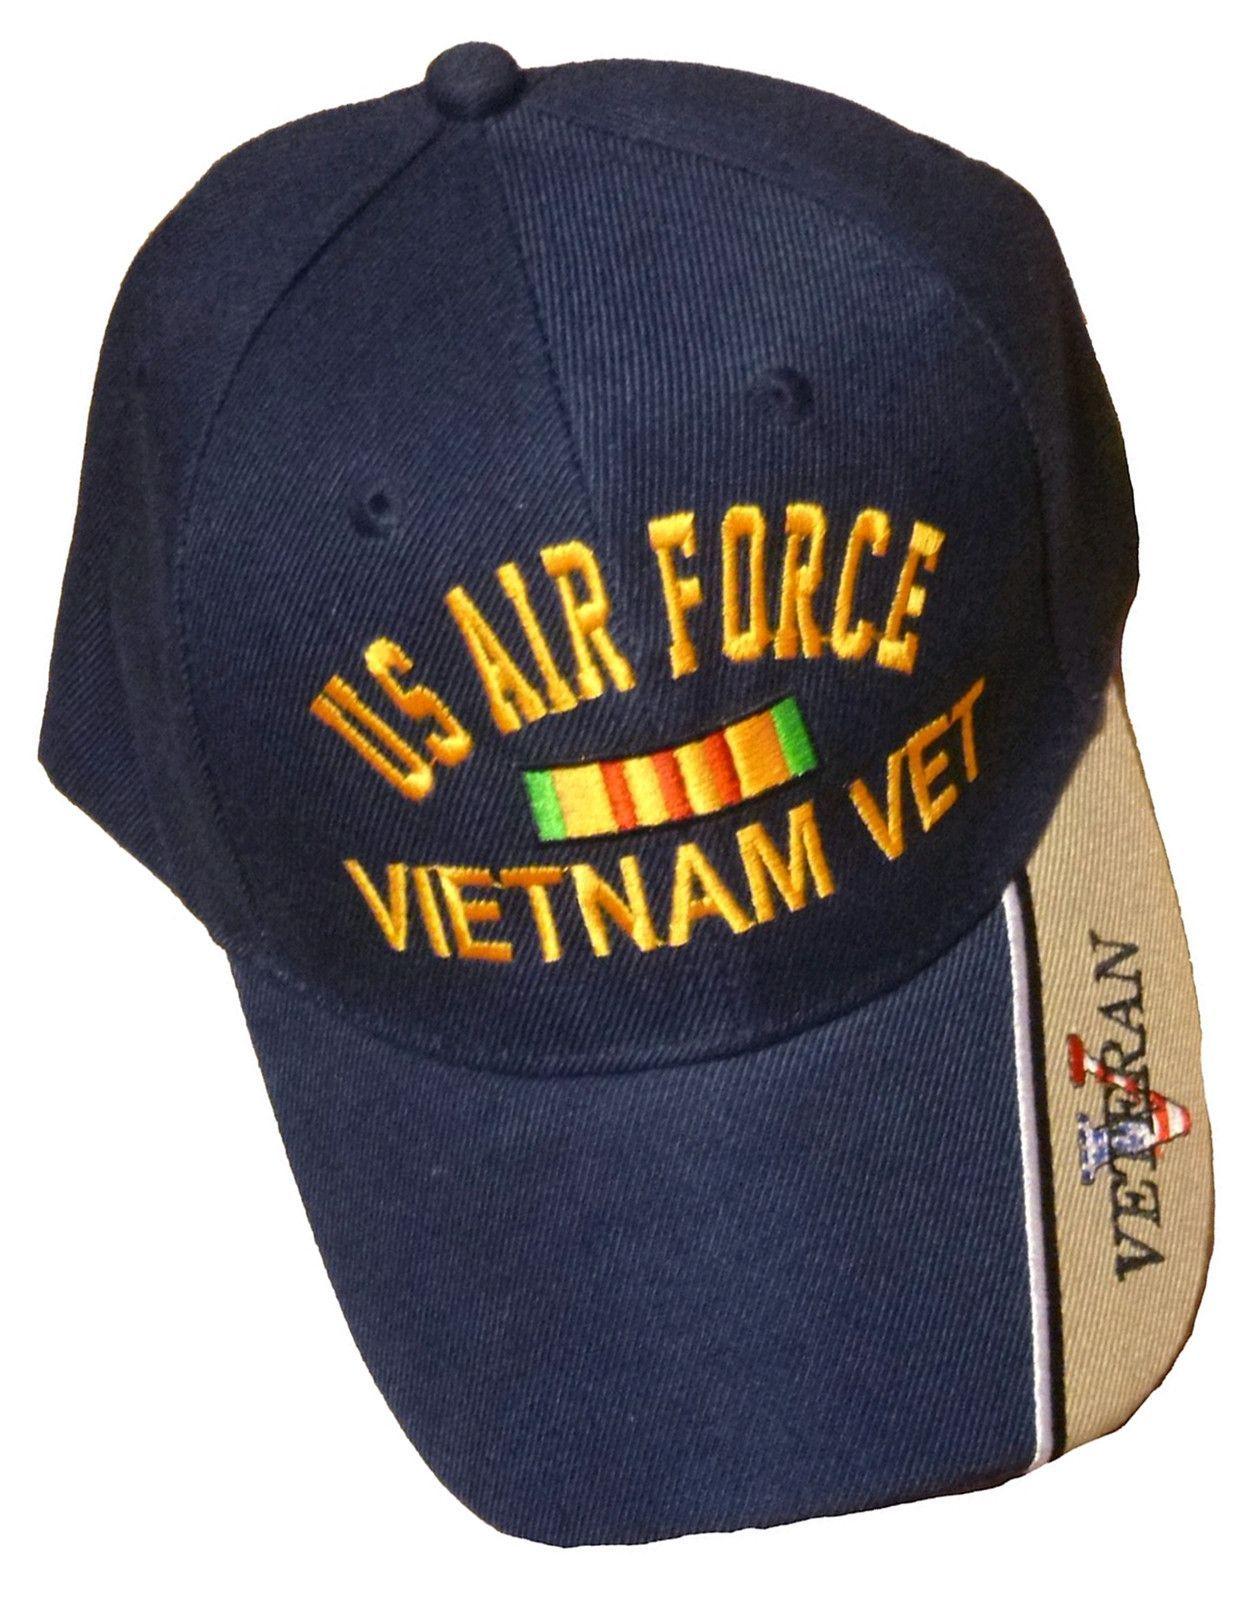 Blue Military Logo - US Air Force Vietnam Vet Baseball Cap Black Veteran Hat. Us Air